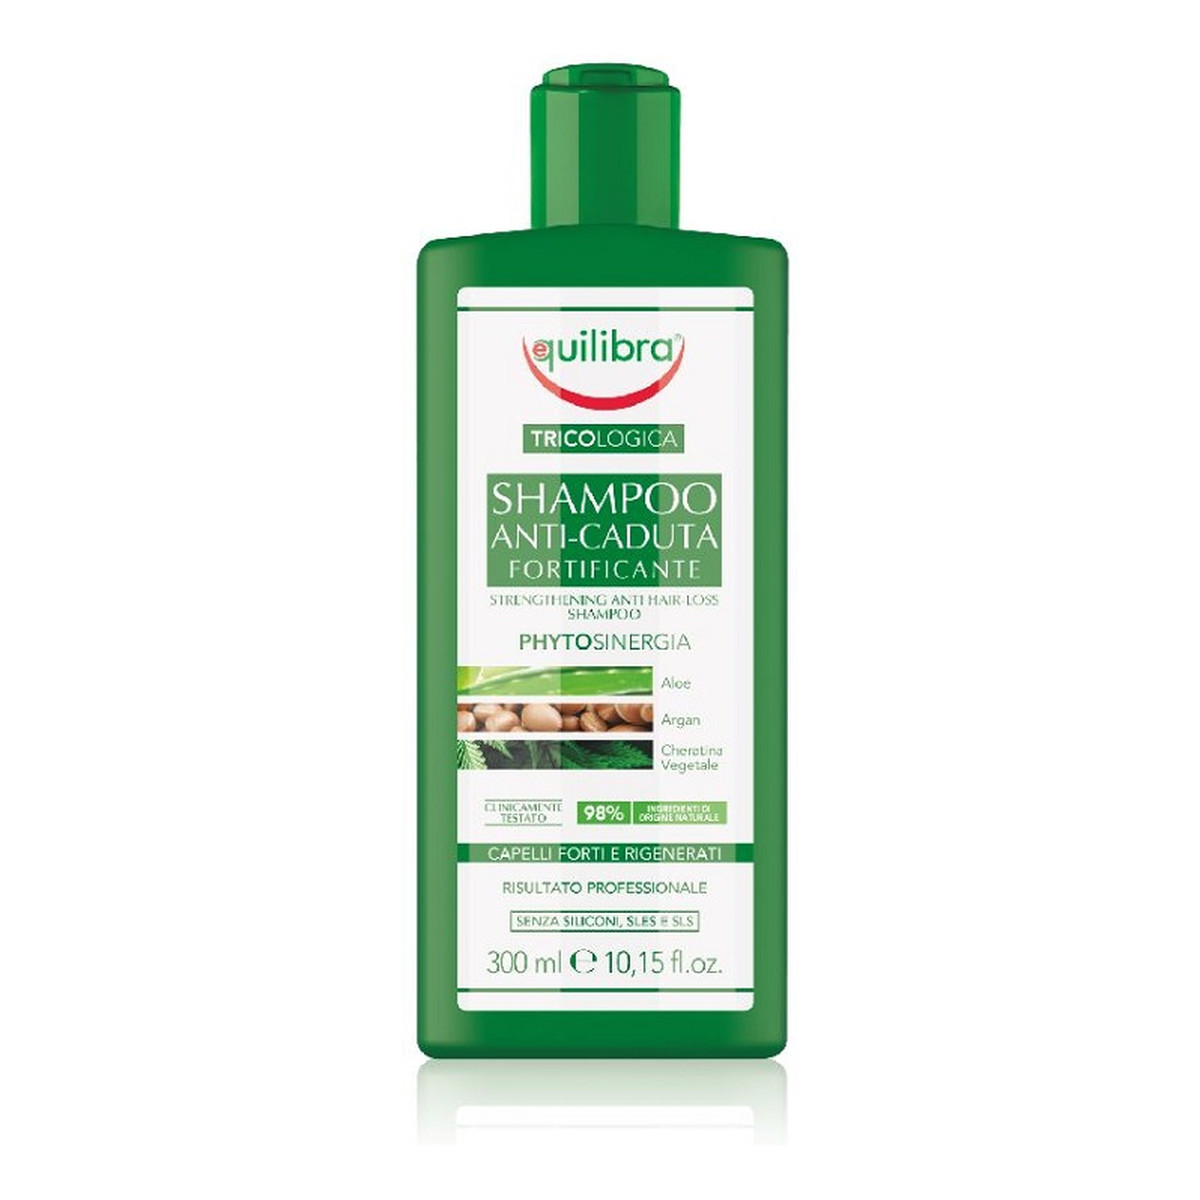 Equilibra Tricologica Shampoo Anti-Caduta Fortificante - Wzmacniający szampon przeciw wypadaniu włosów 300ml